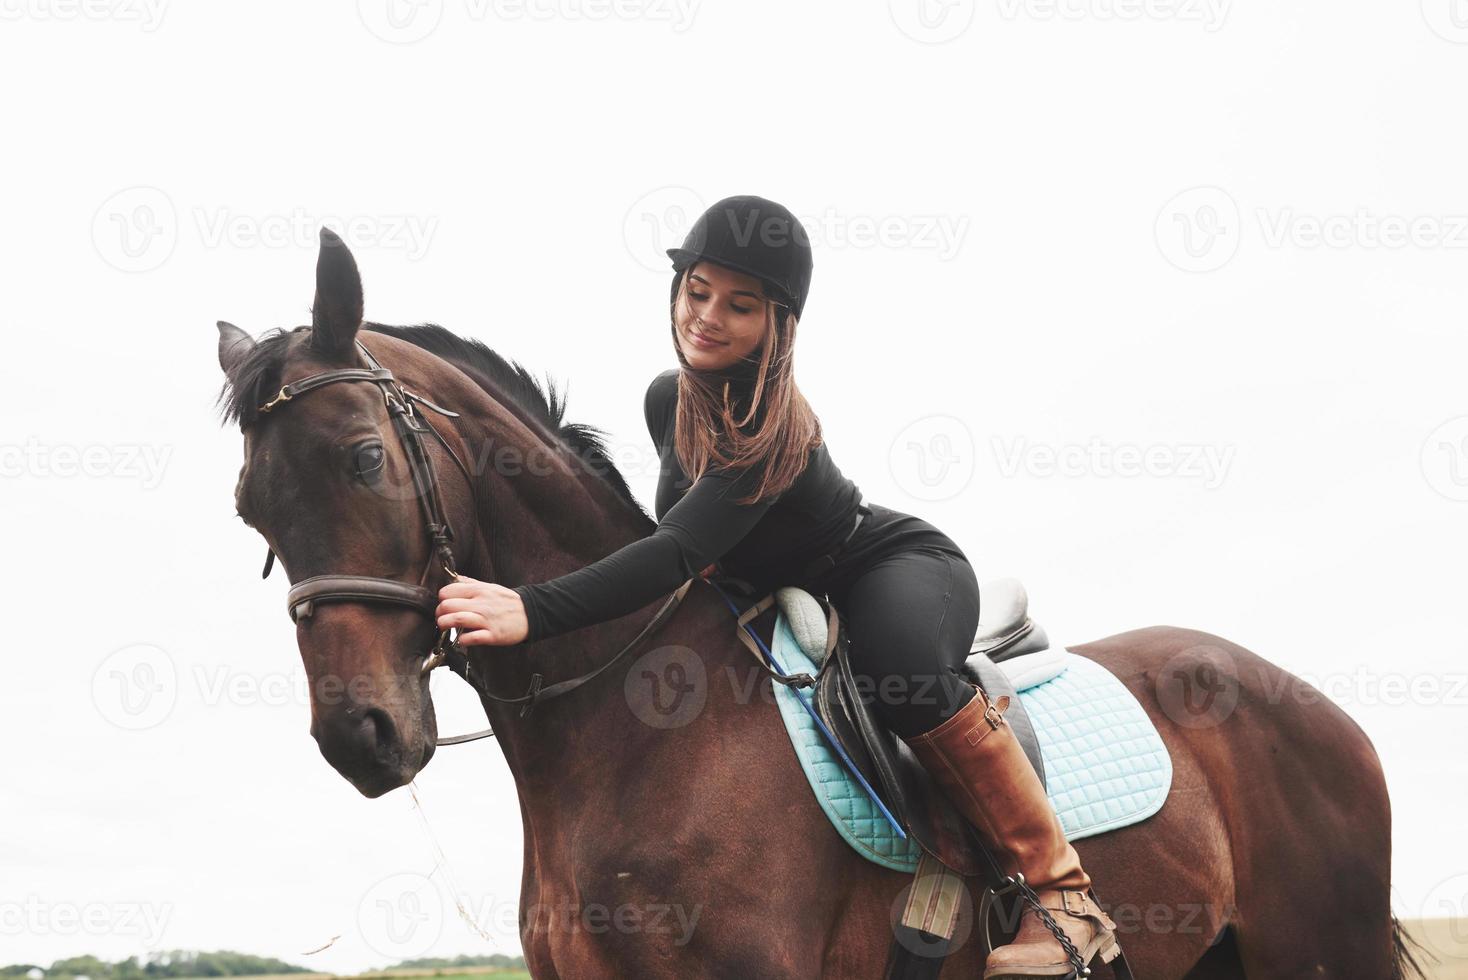 jong mooi meisje - paardrijden, paardensport in de lente foto